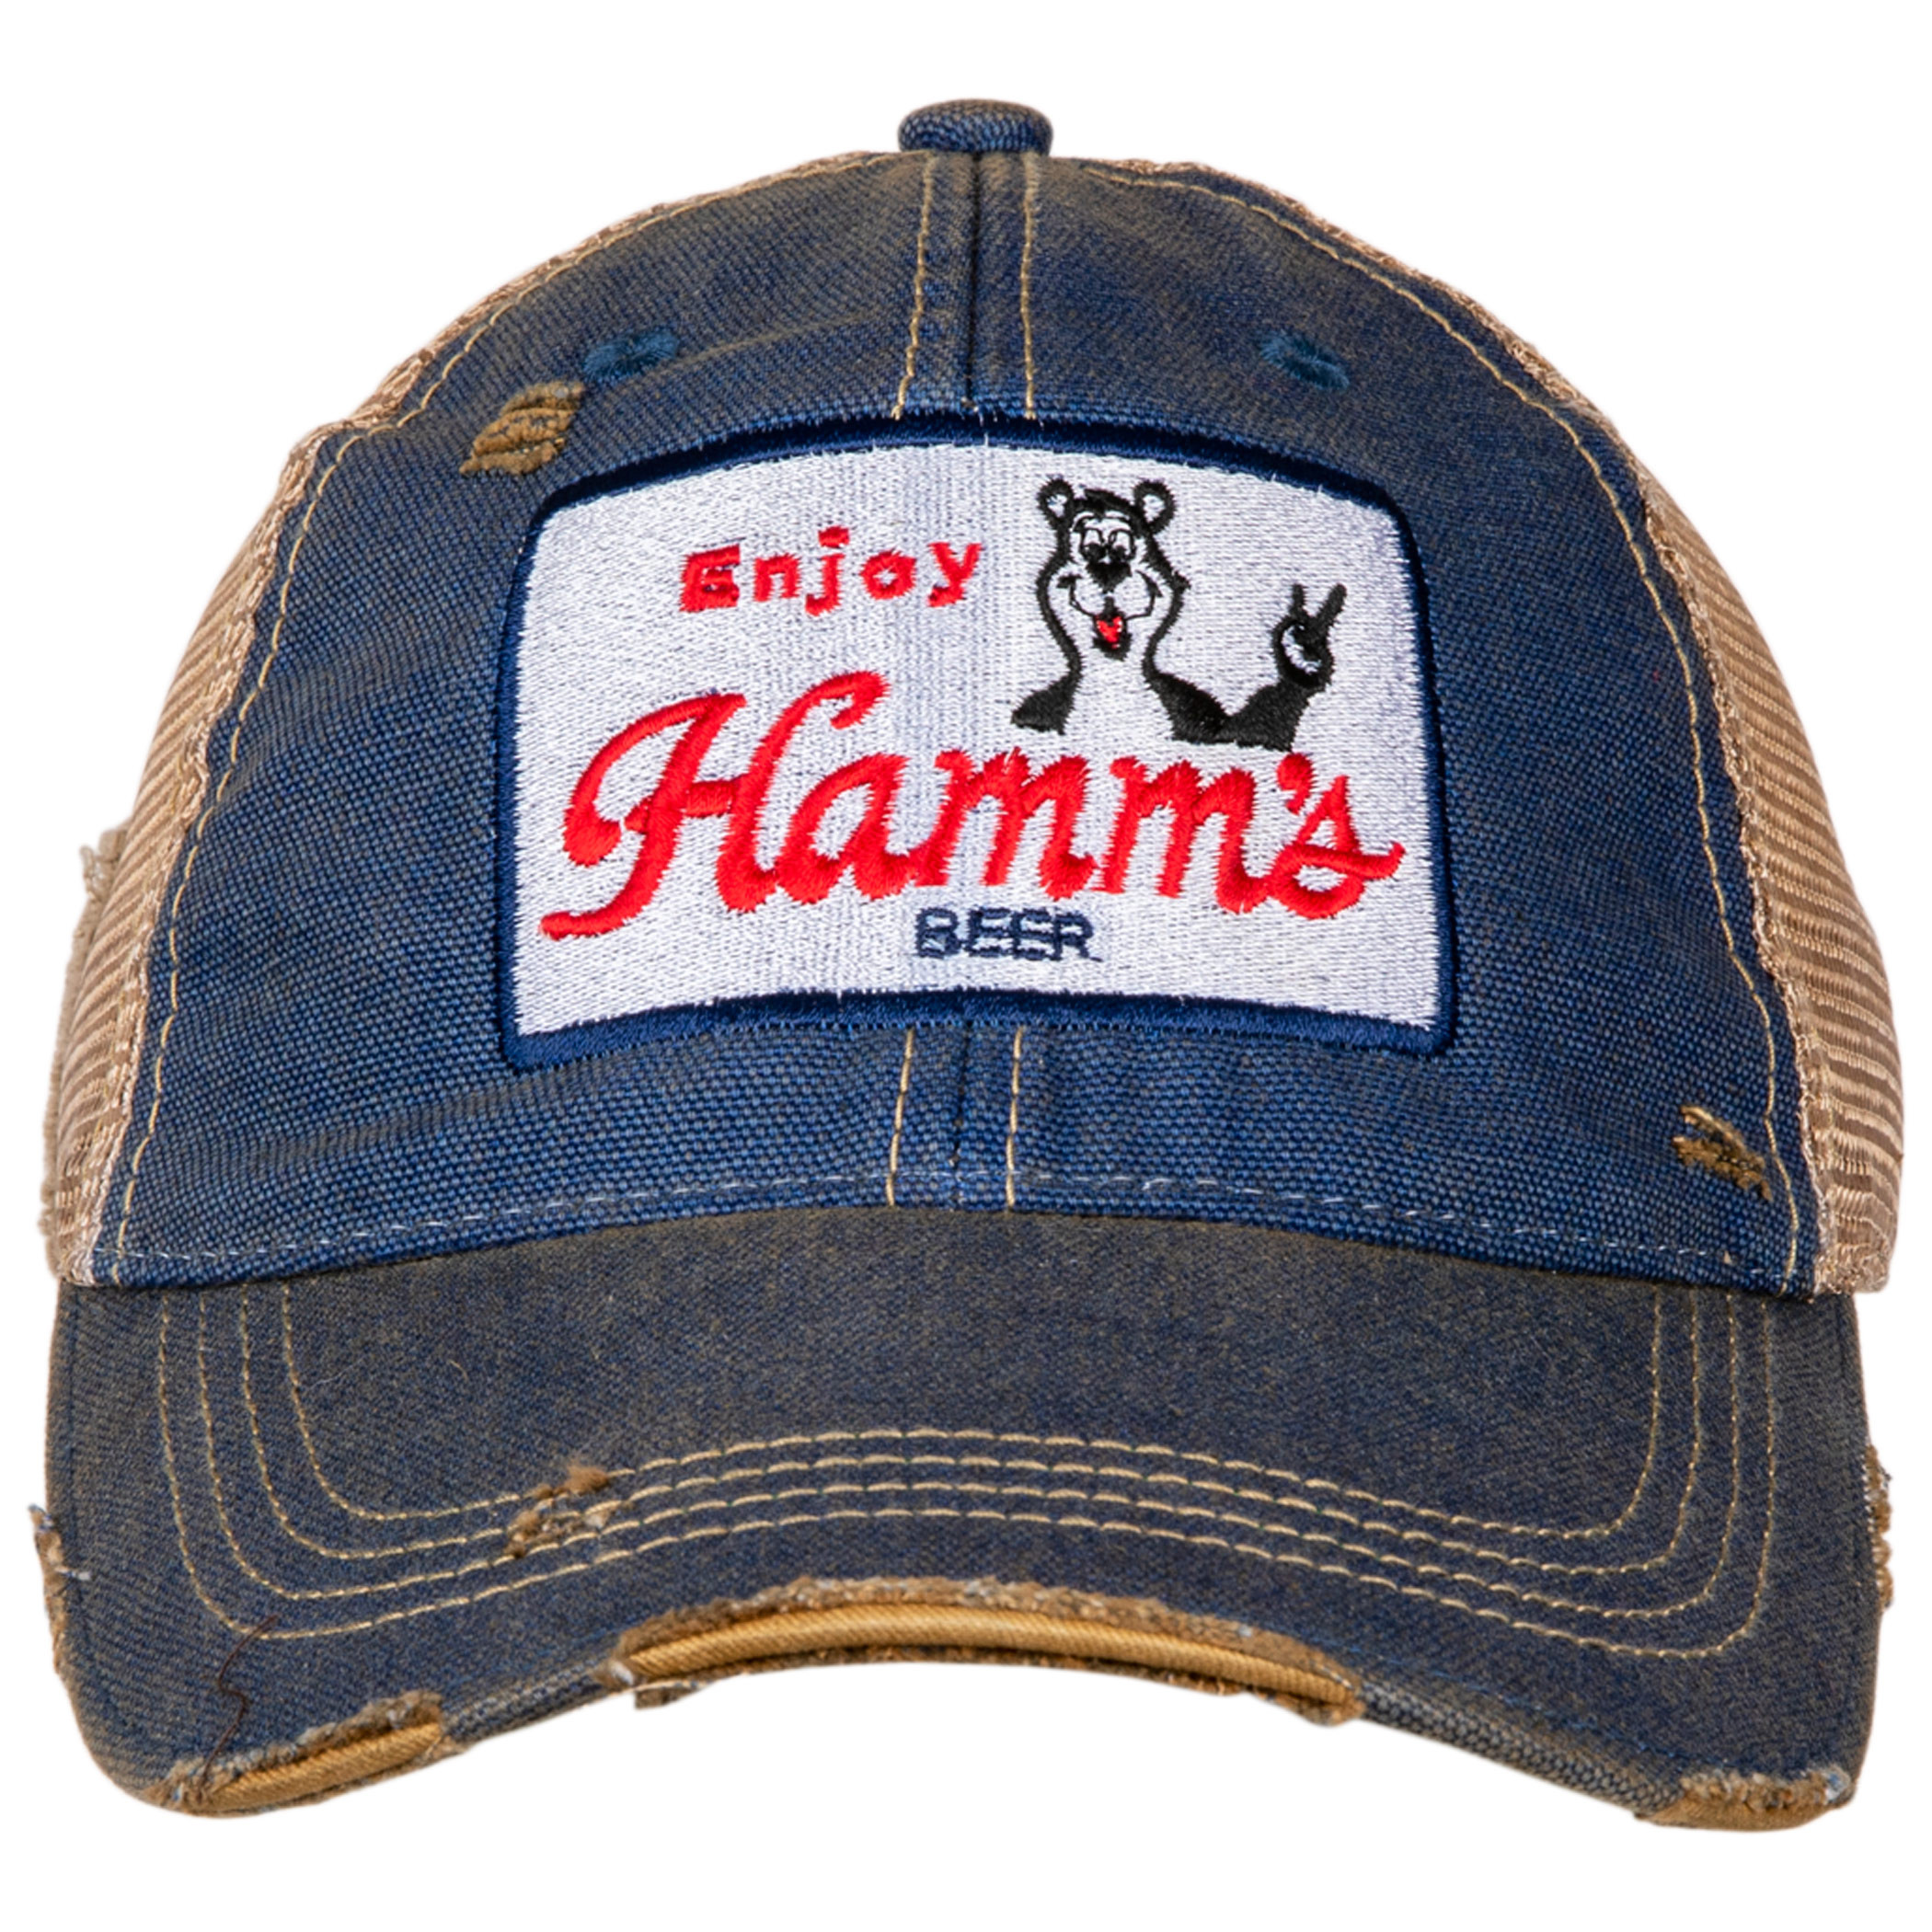 Hamm's Bear Vintage Mesh Trucker Snapback Hat